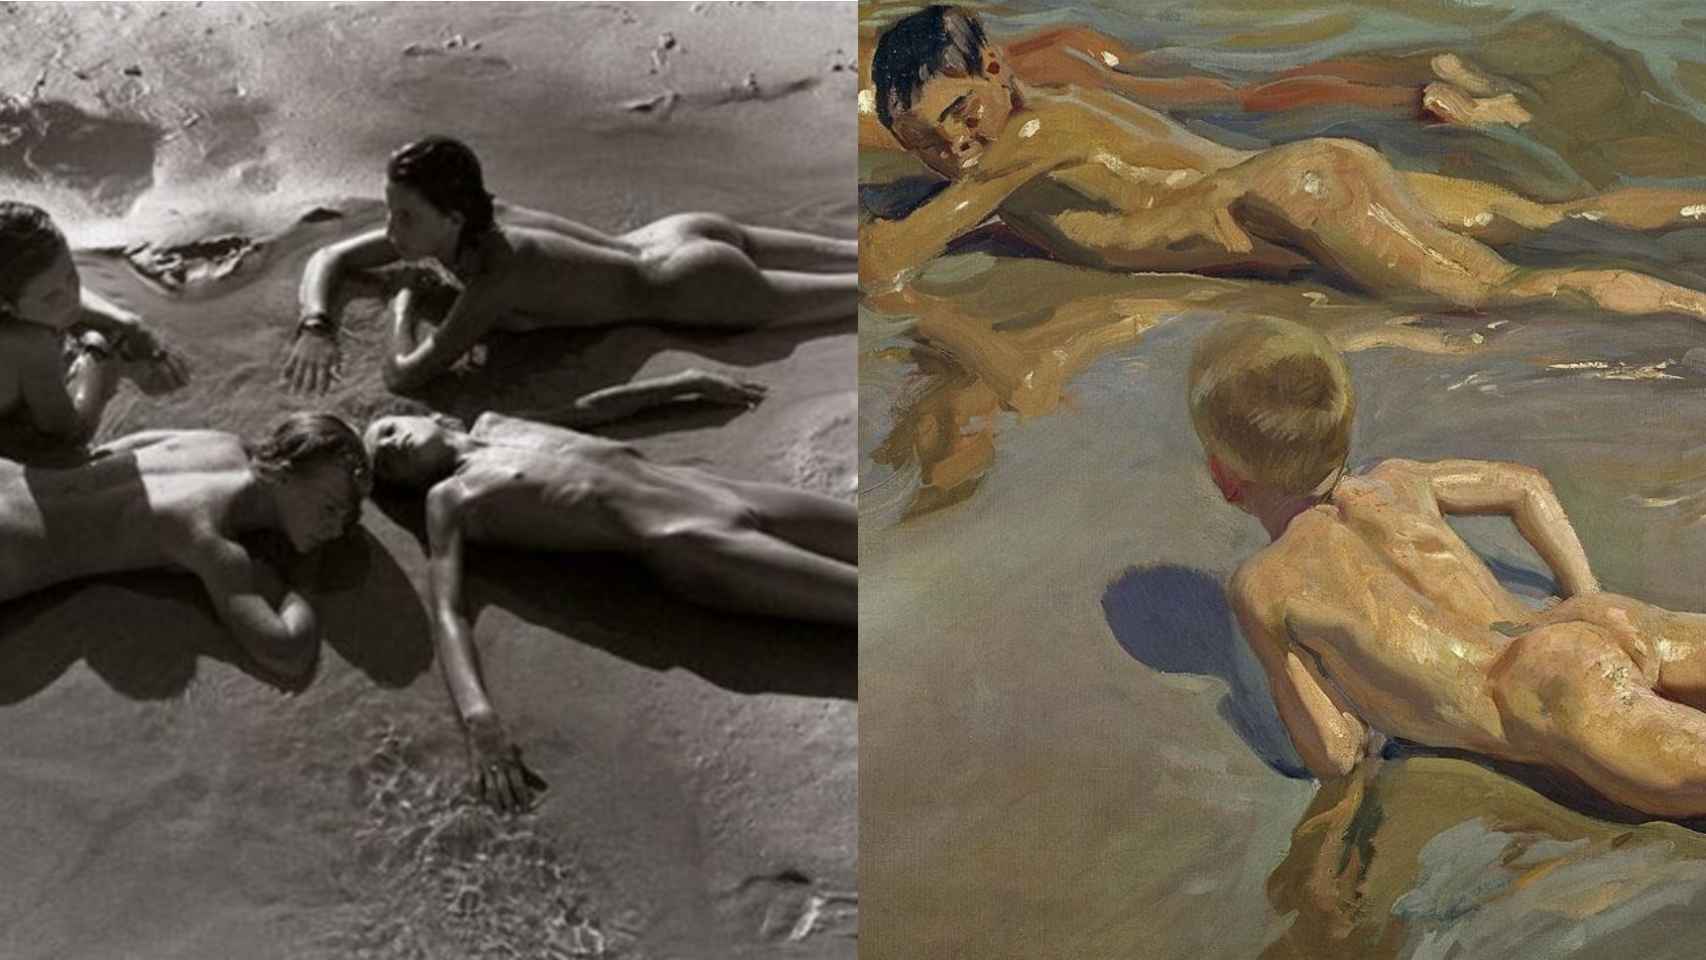 Adolescentes y niños en la playa, de Sturges y de Sorolla. Pintura y fotografía separadas por 80 años.